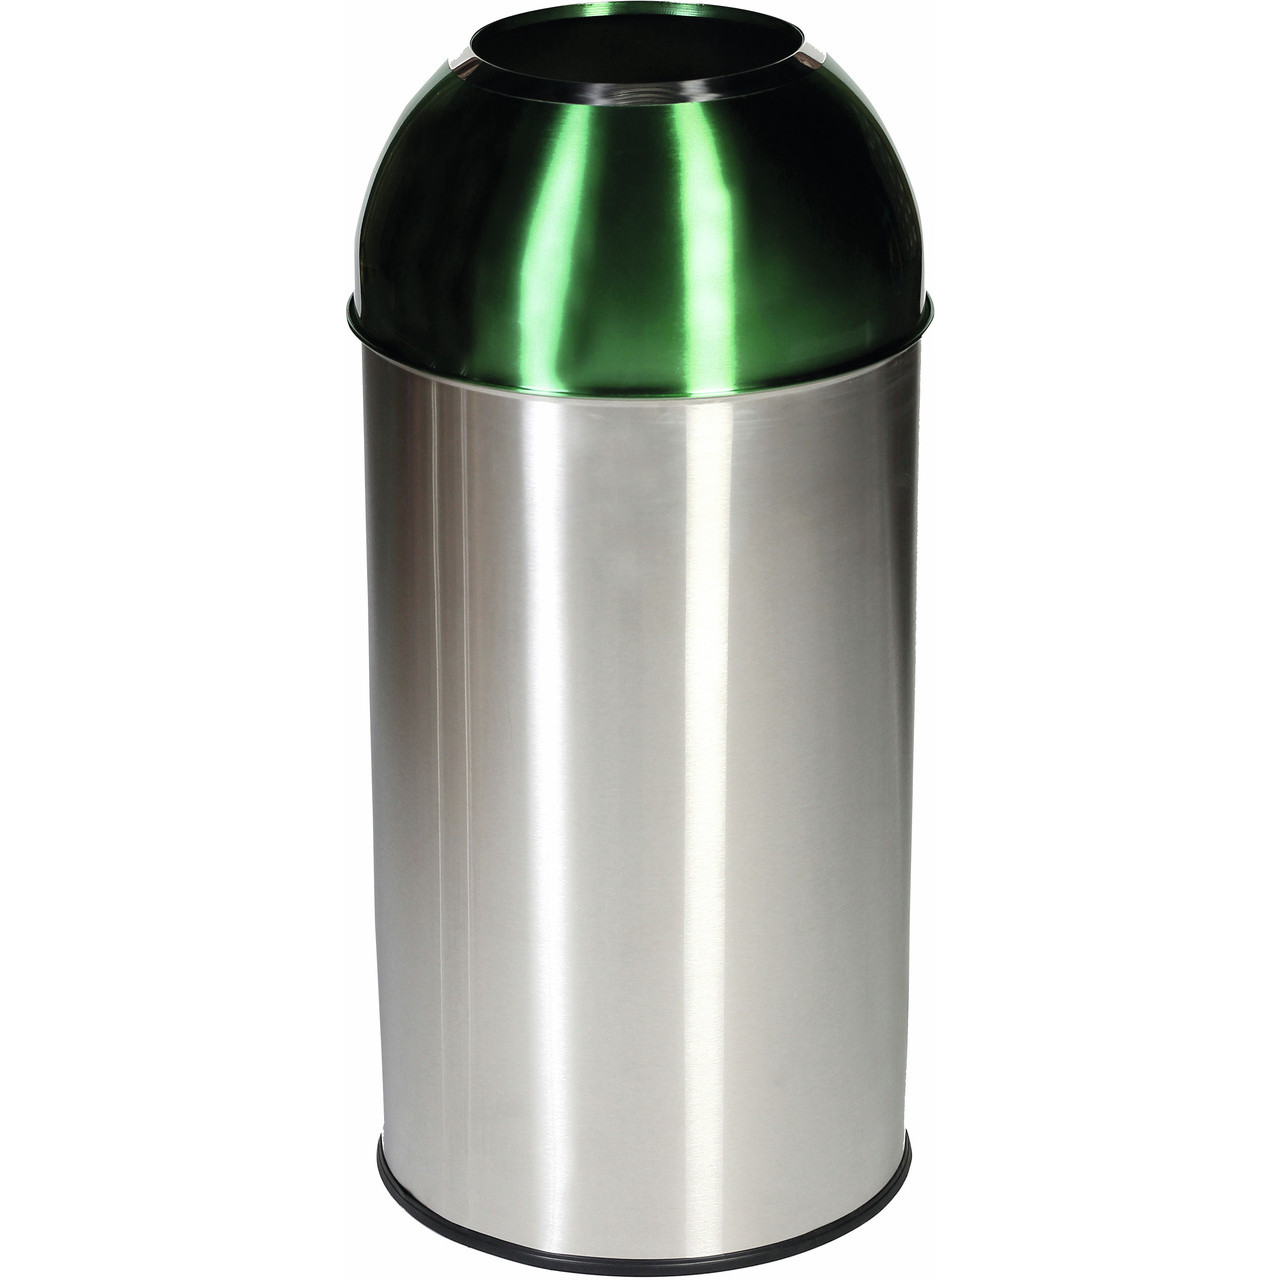 Recyclingbehälter mit Einwurföffnung 40 l, grün